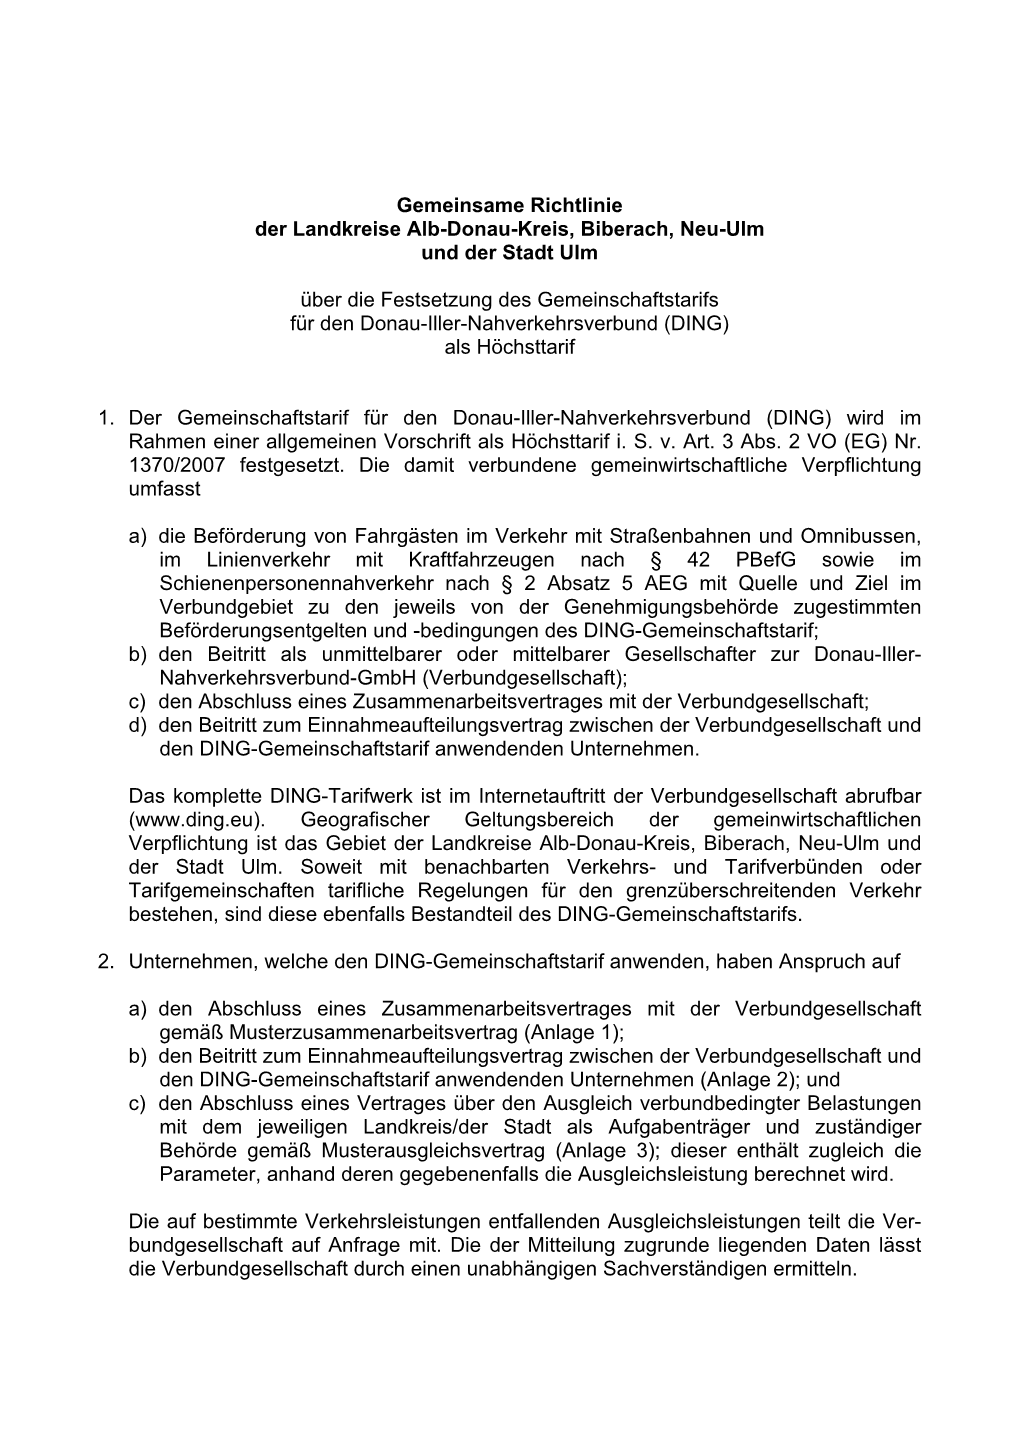 Gemeinsame Richtlinie Der Landkreise Alb-Donau-Kreis, Biberach, Neu-Ulm Und Der Stadt Ulm